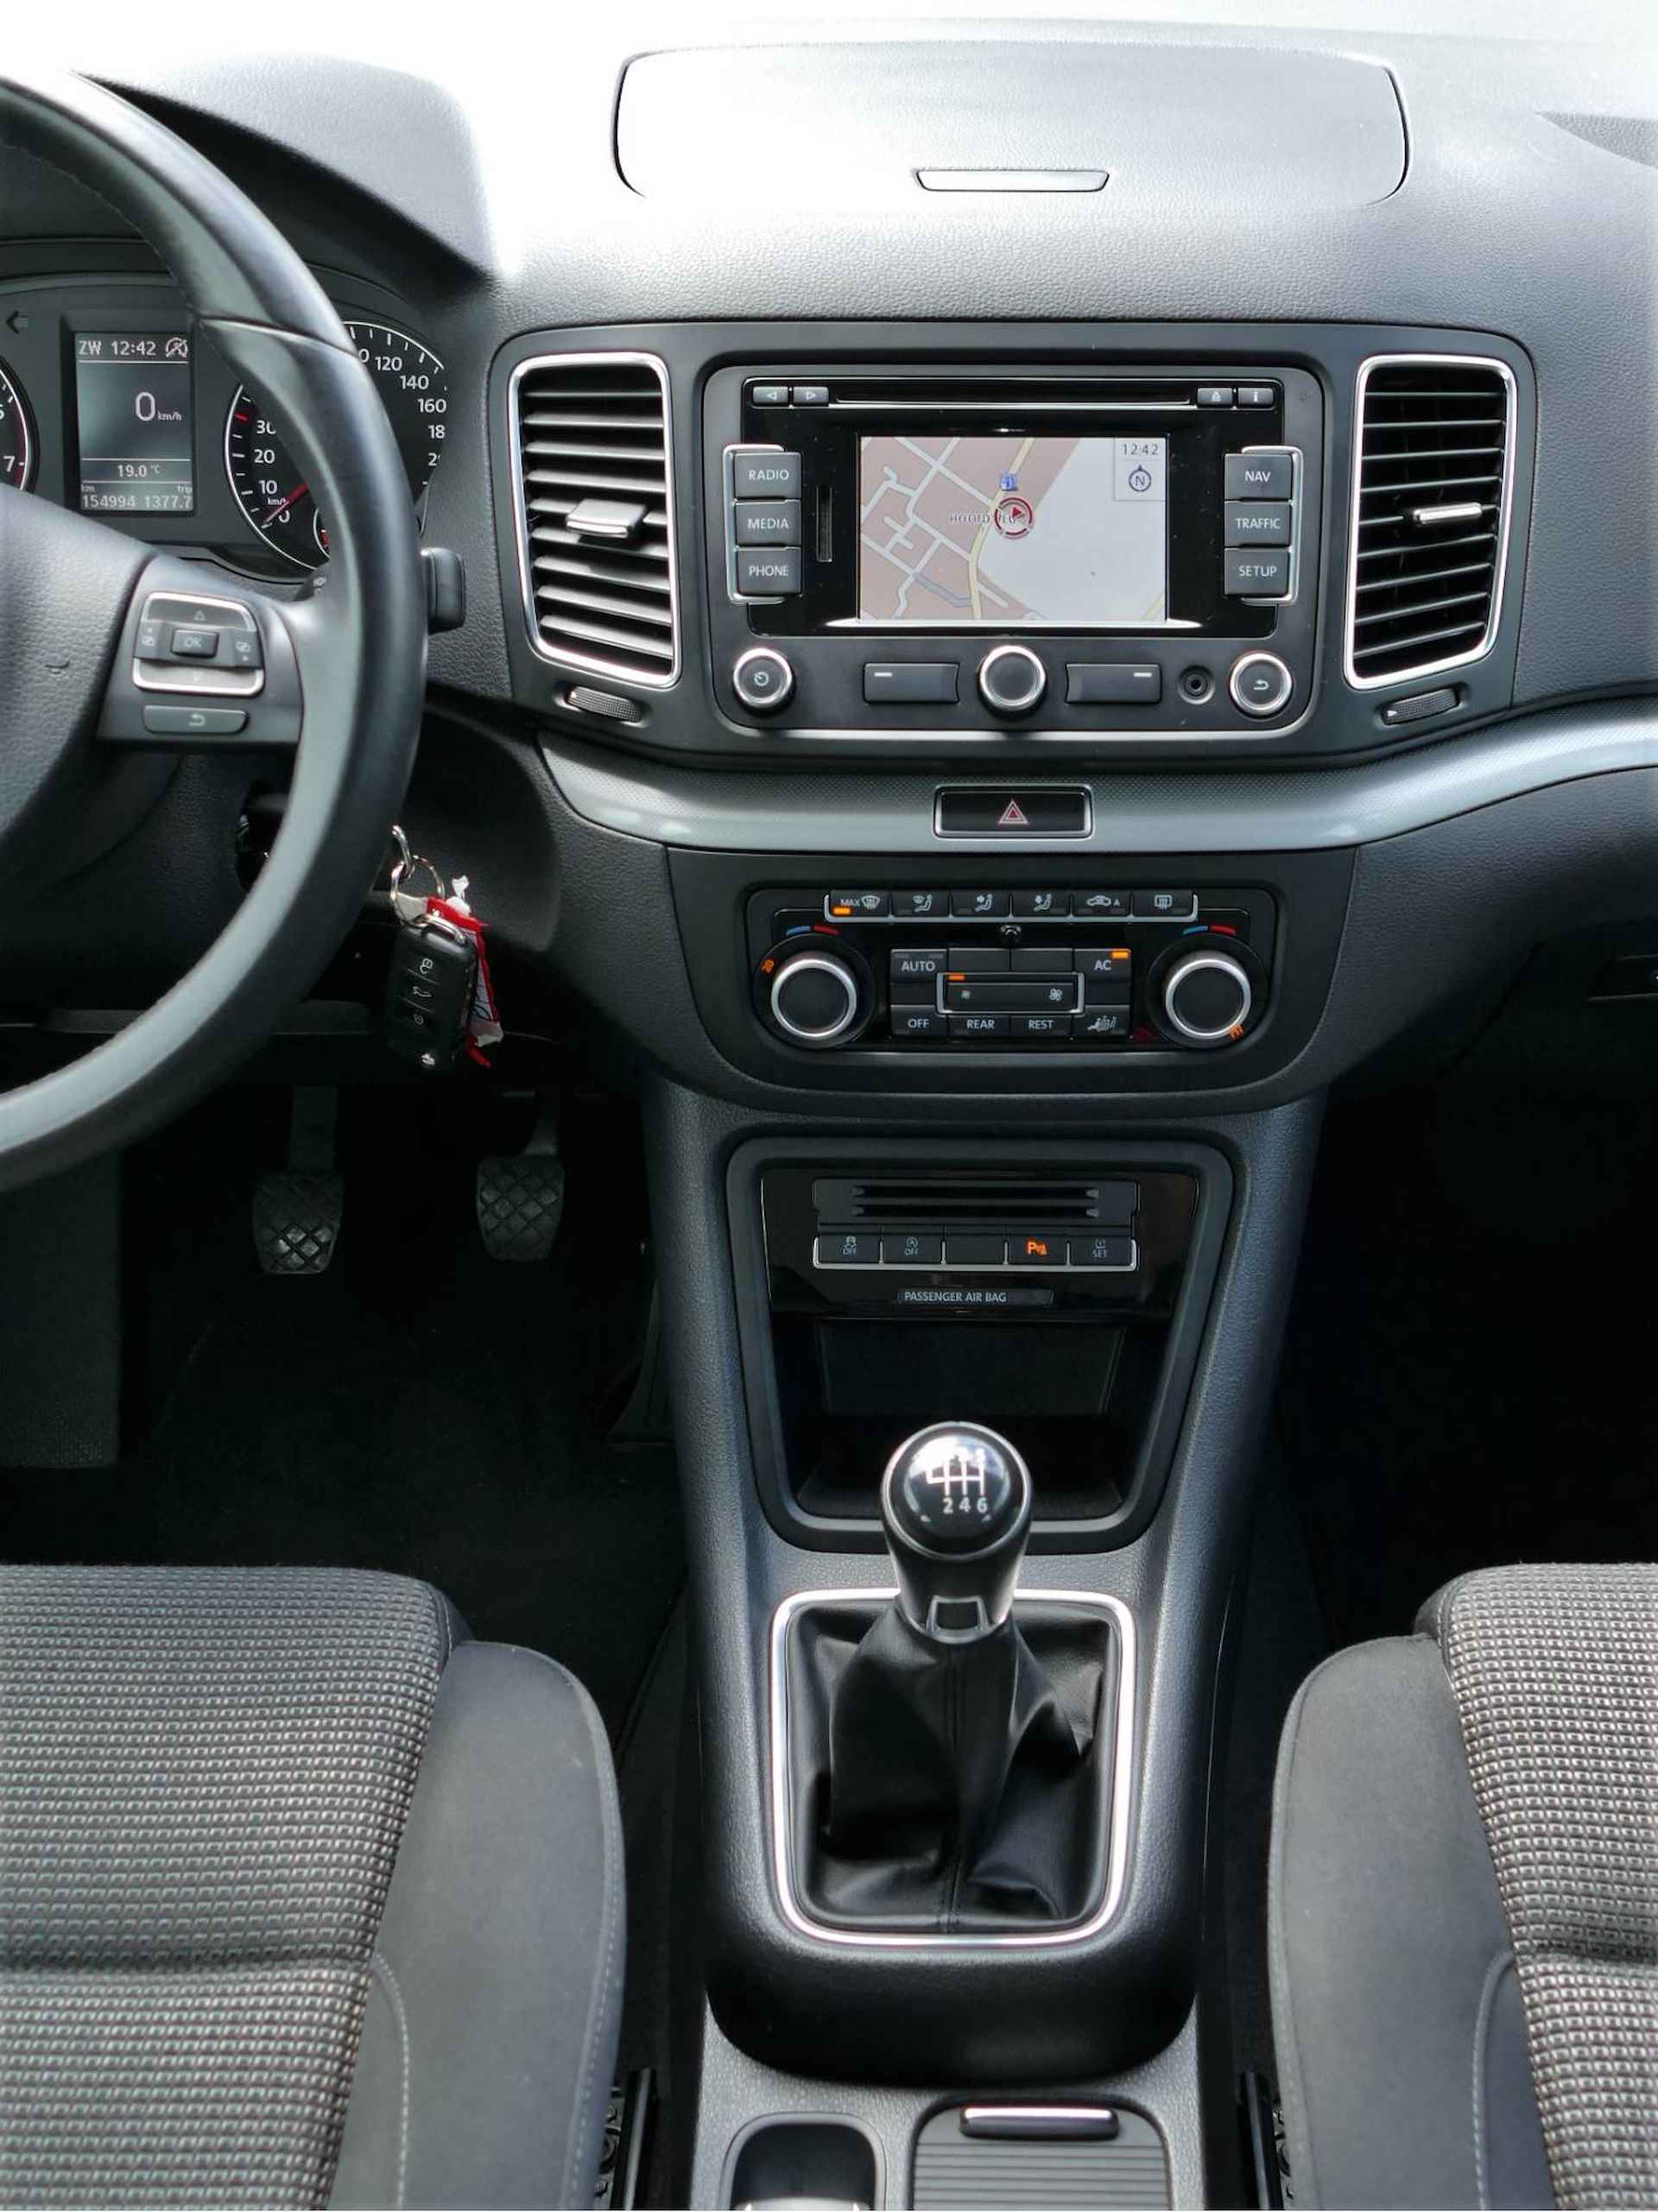 Volkswagen Sharan 1.4 TSI Comfortline 7 persoons | navigatie | cruise control - 20/49